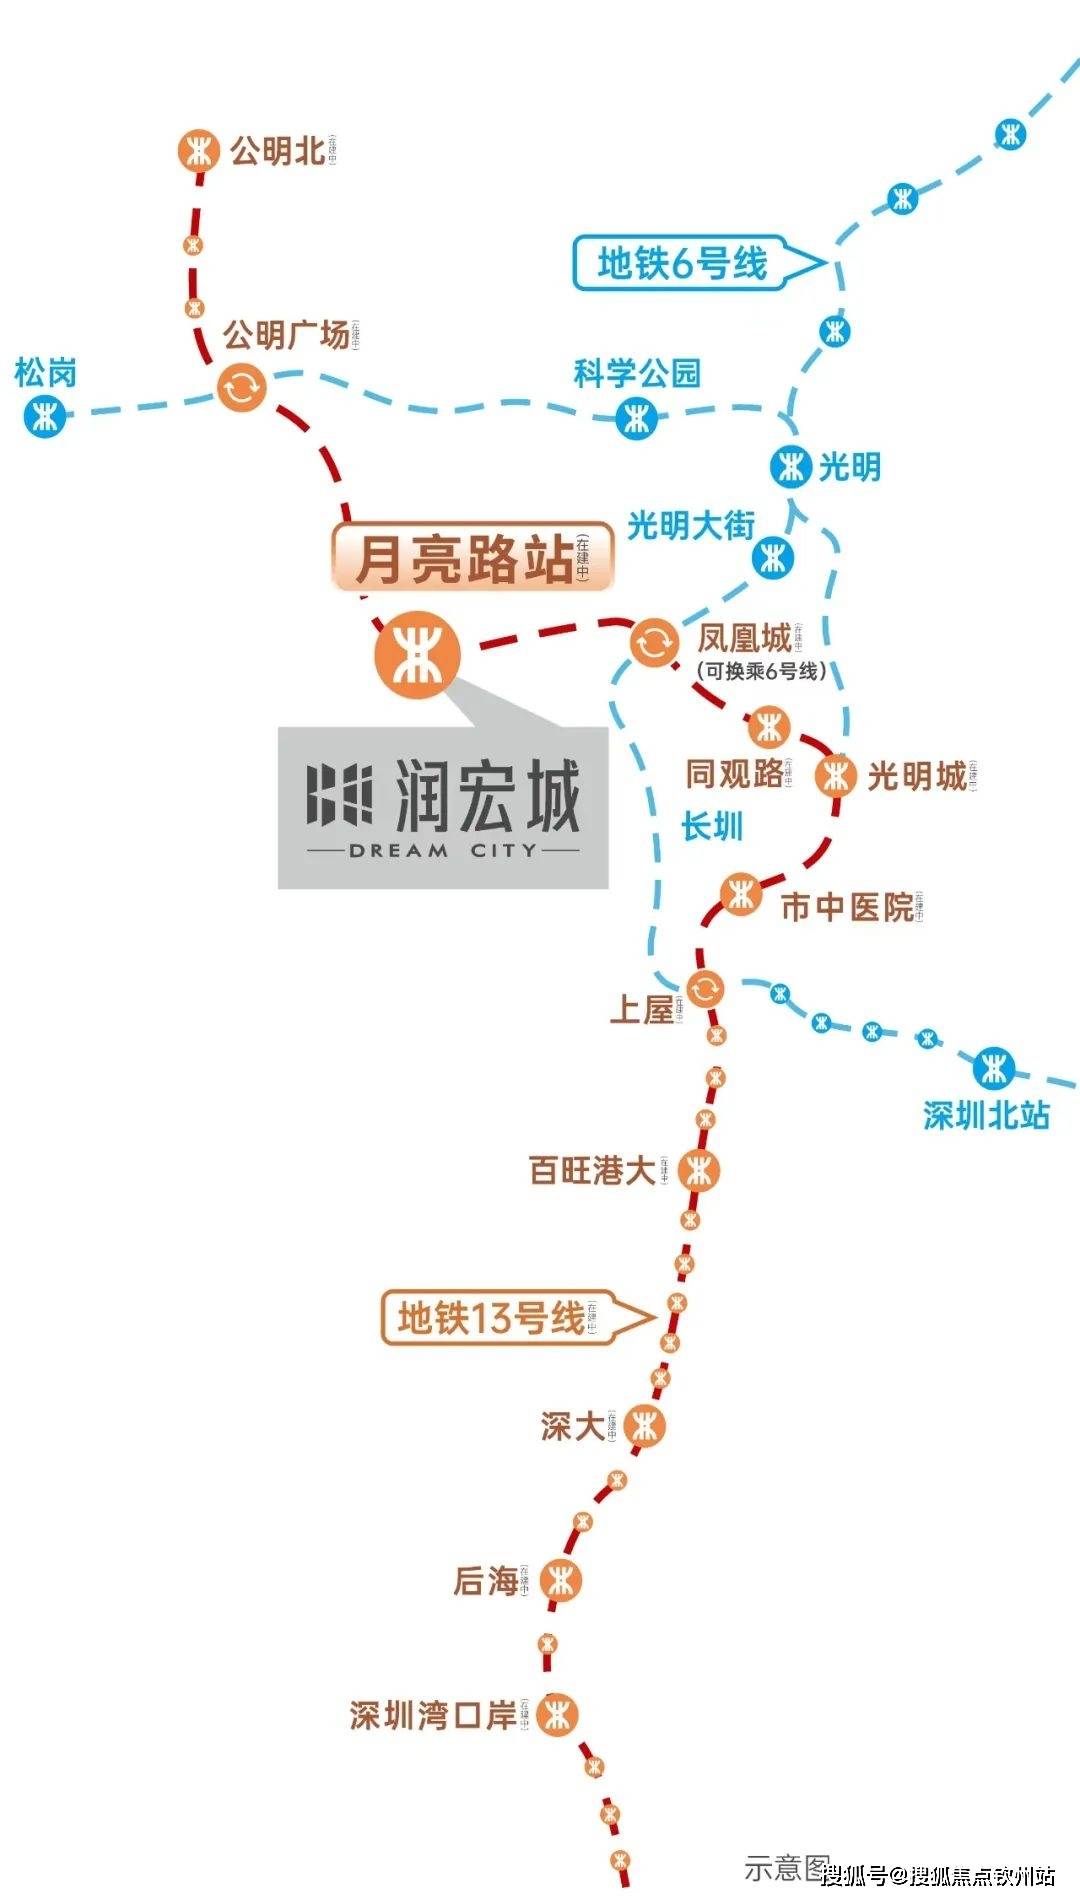 润宏城一期住宅,依托深圳黄金科创线地铁13号线月亮路站*,仅需1站即